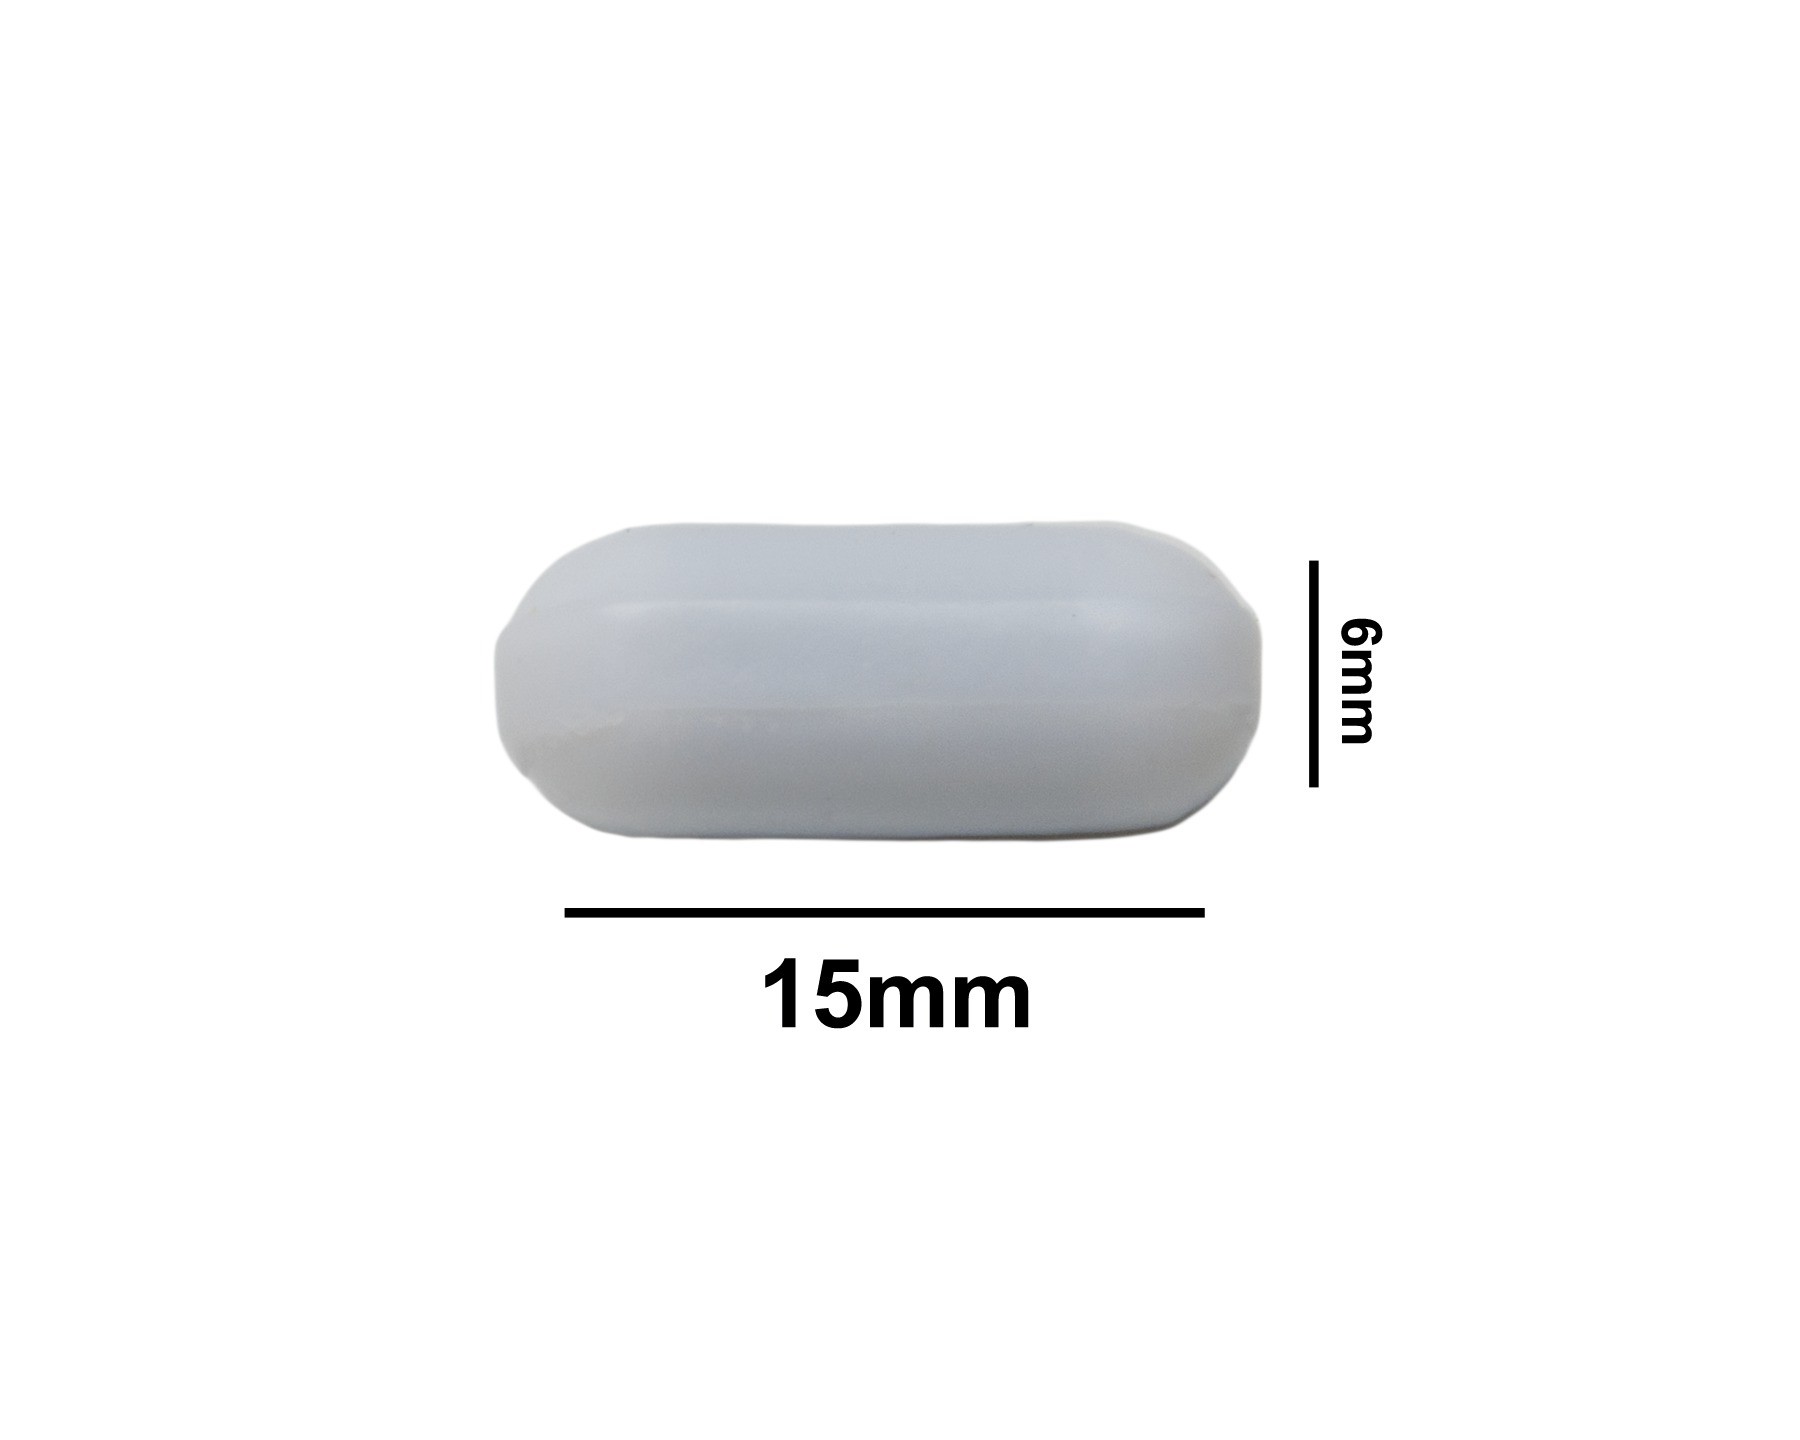 SP Bel-Art Spinbar Teflon Polygon Magnetic Stirring Bar; 15 x 6mm, White, without Pivot Ring